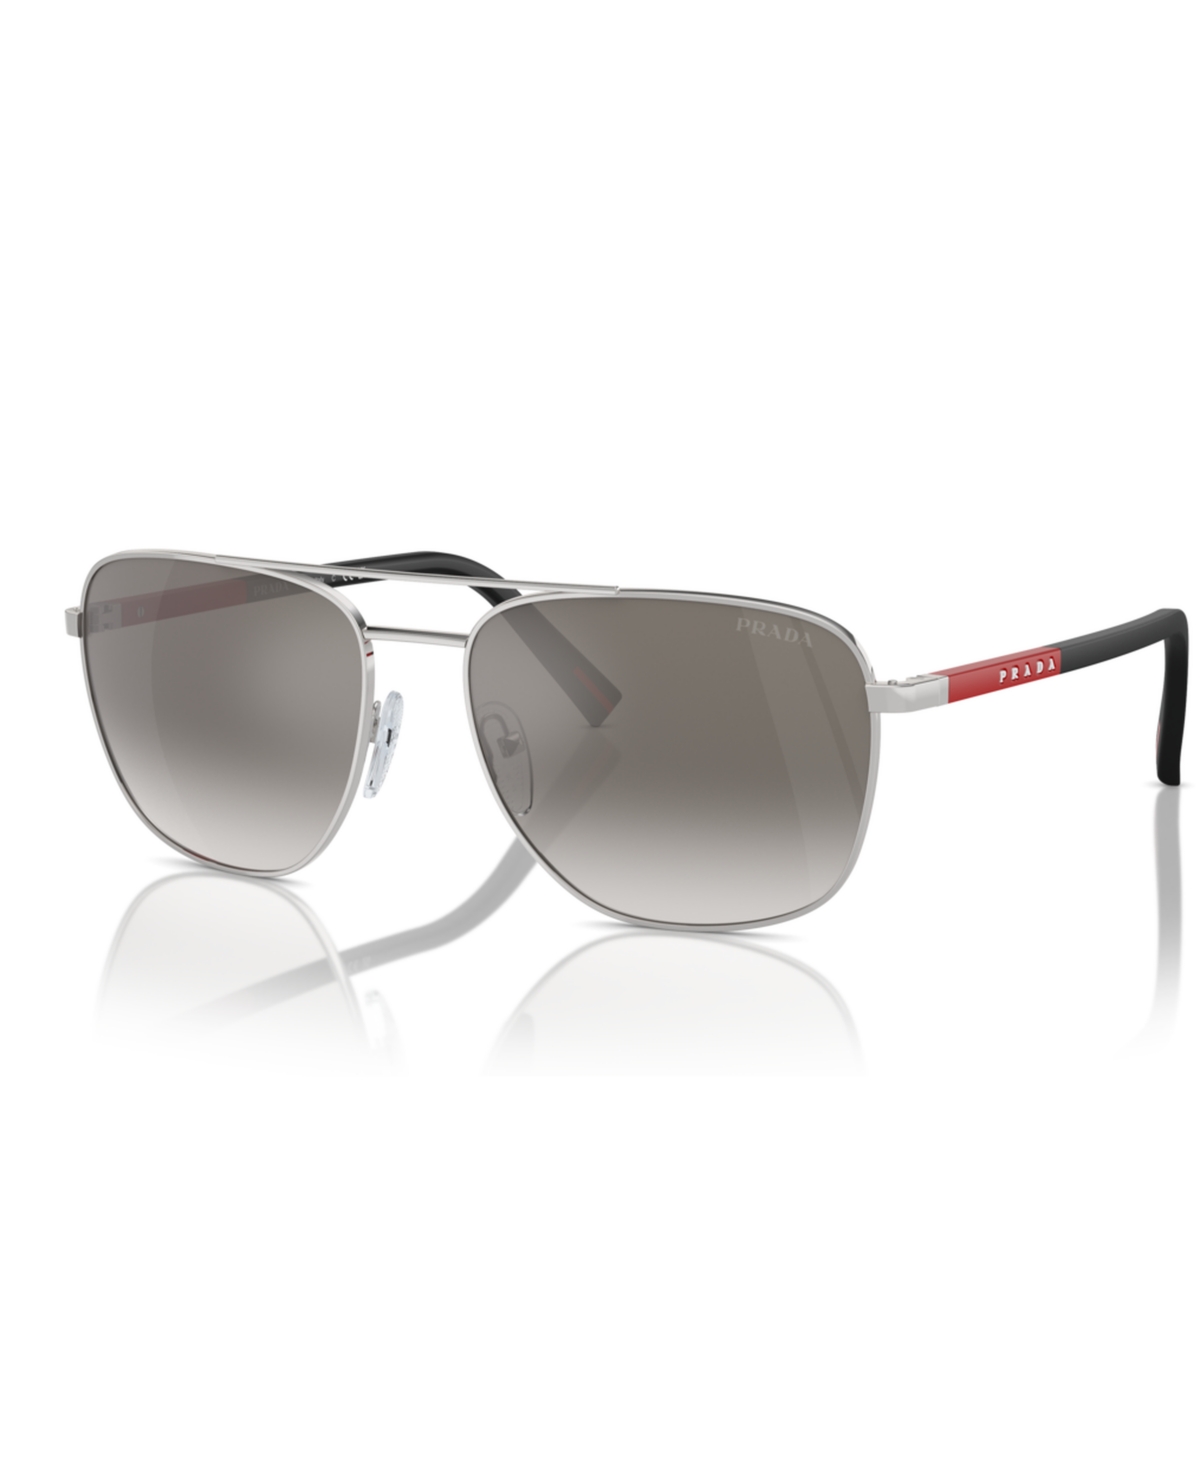 Men's Sunglasses, Ps 54ZS - Silver